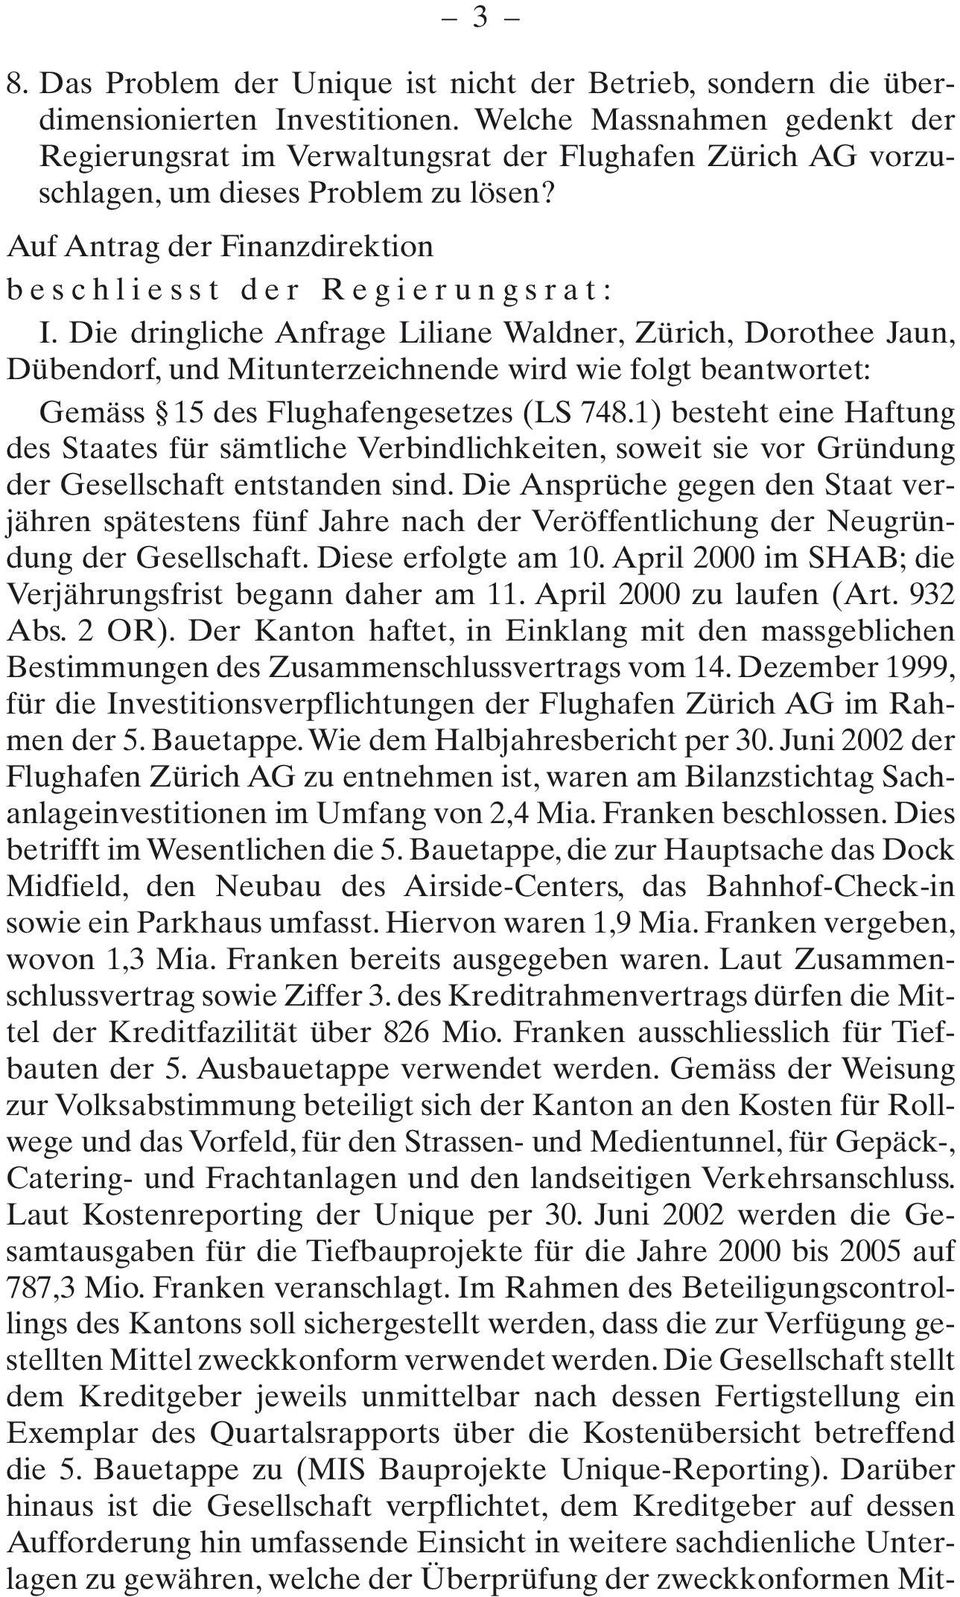 Die dringliche Anfrage Liliane Waldner, Zürich, Dorothee Jaun, Dübendorf, und Mitunterzeichnende wird wie folgt beantwortet: Gemäss 15 des Flughafengesetzes (LS 748.